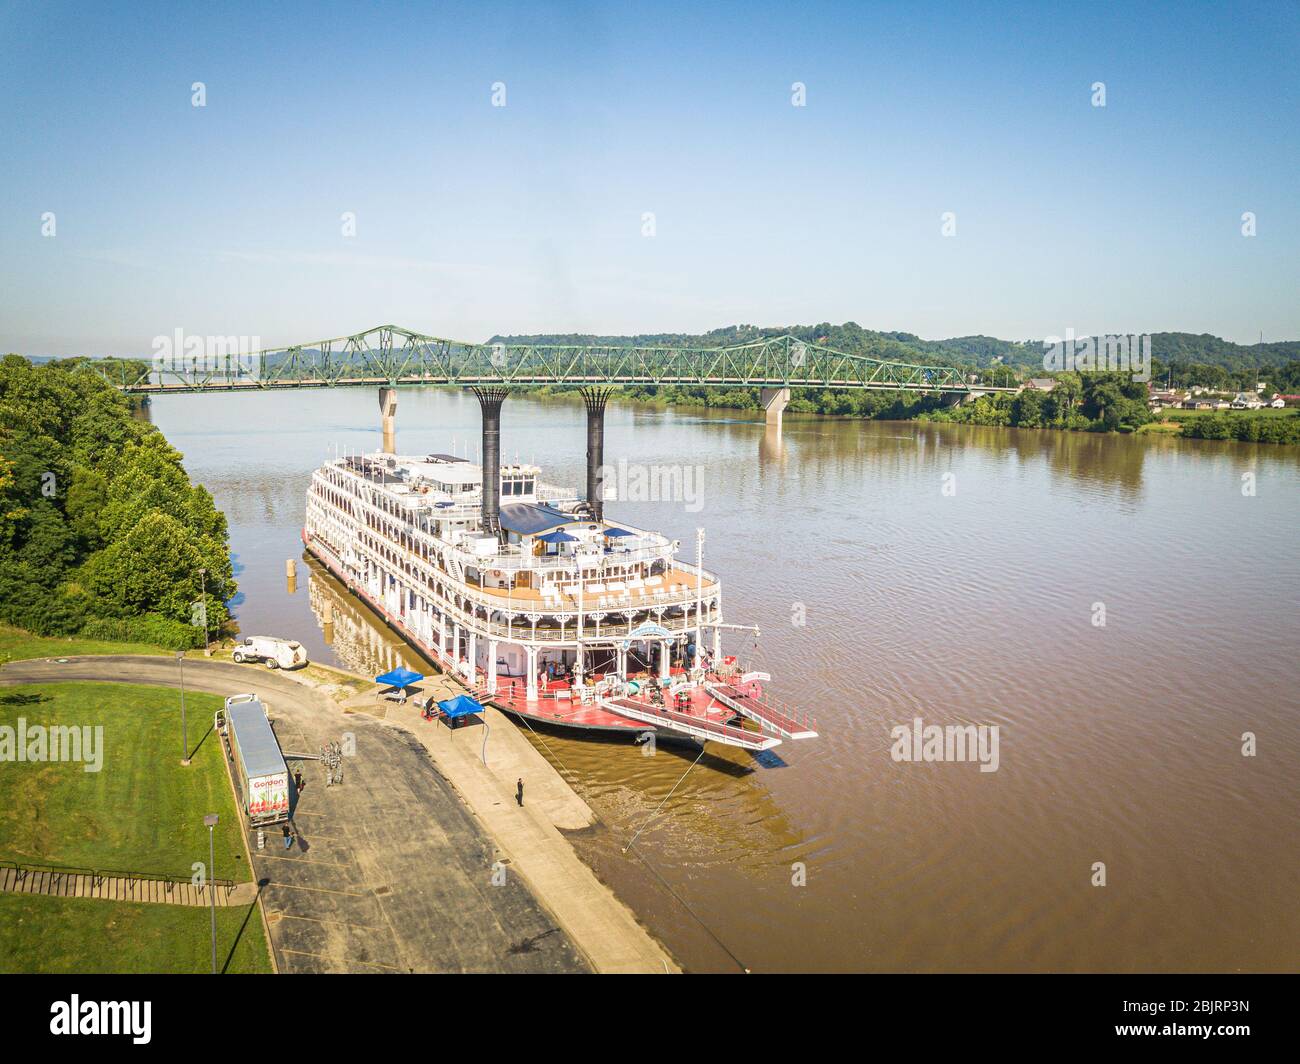 Le bateau à vapeur à roue sternwheel de la Reine américaine repose sur le Harris River Front Park, sur la rivière Ohio à Huntington, en Virginie occidentale. Banque D'Images